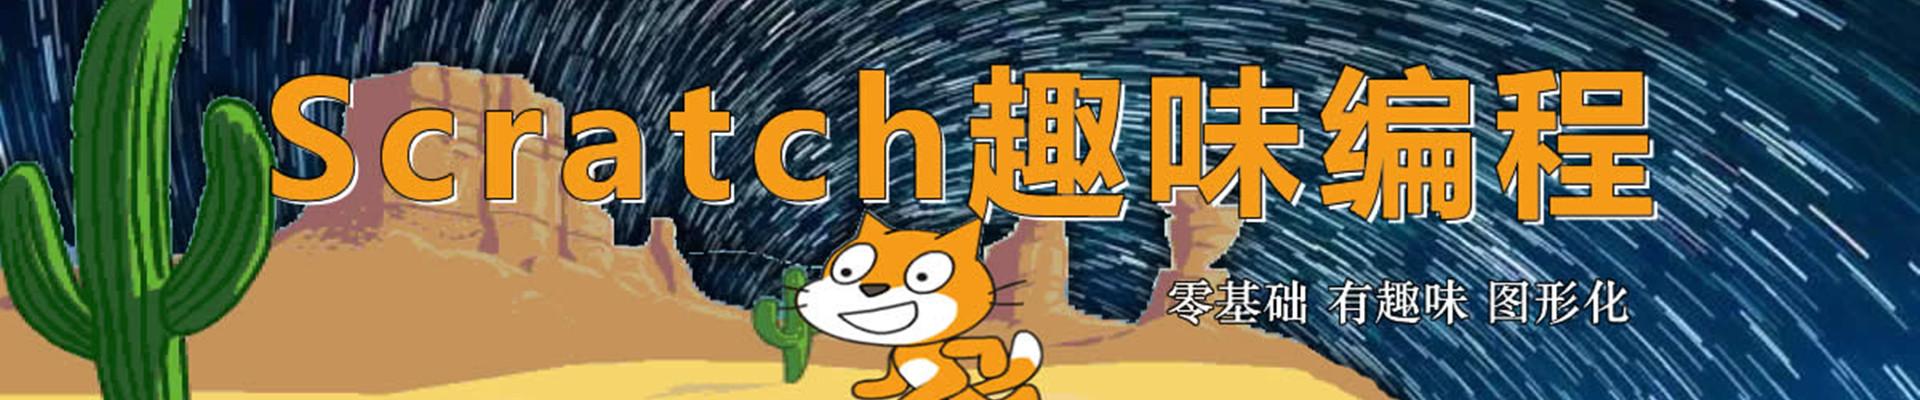 上海Scratch趣味编程培训